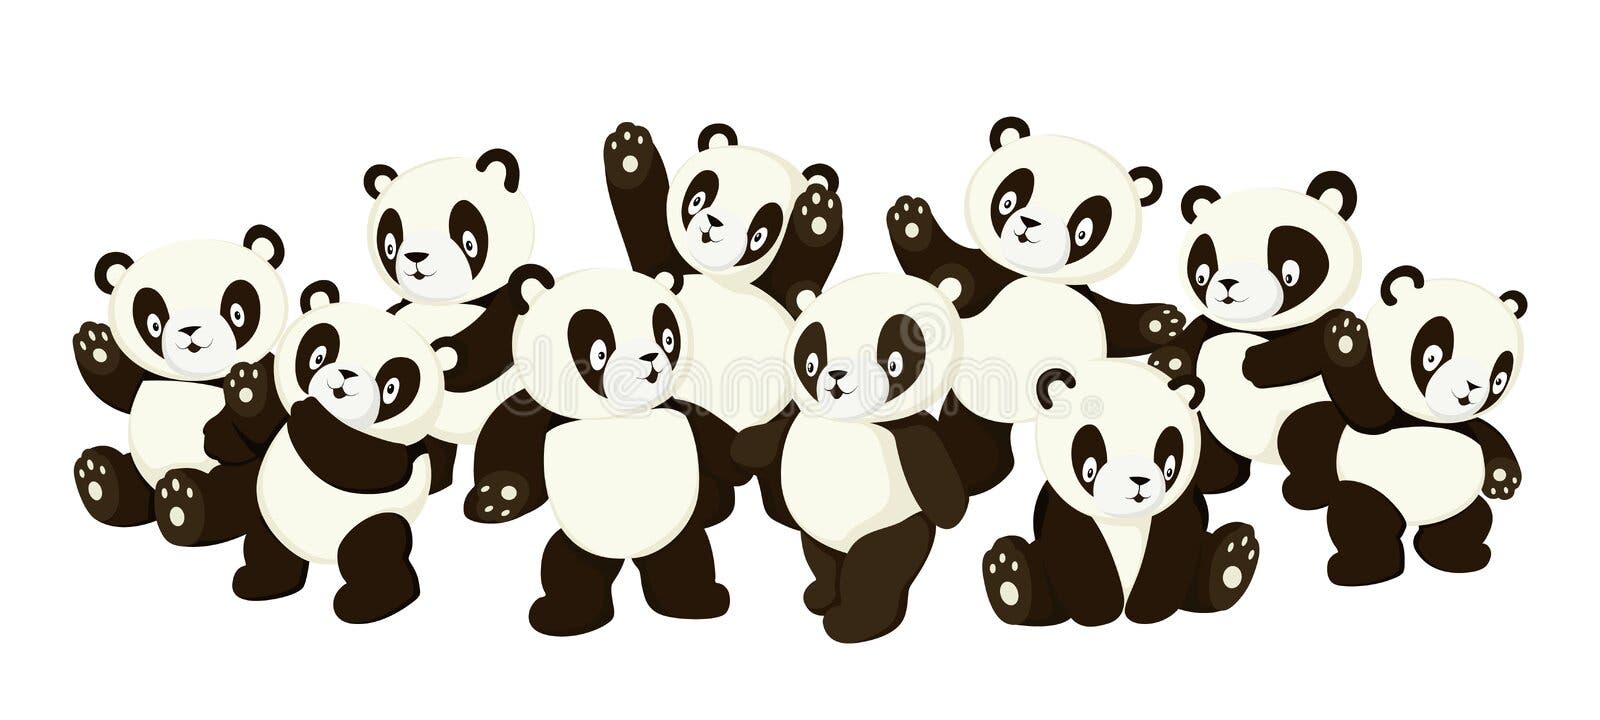 Панда из символов.